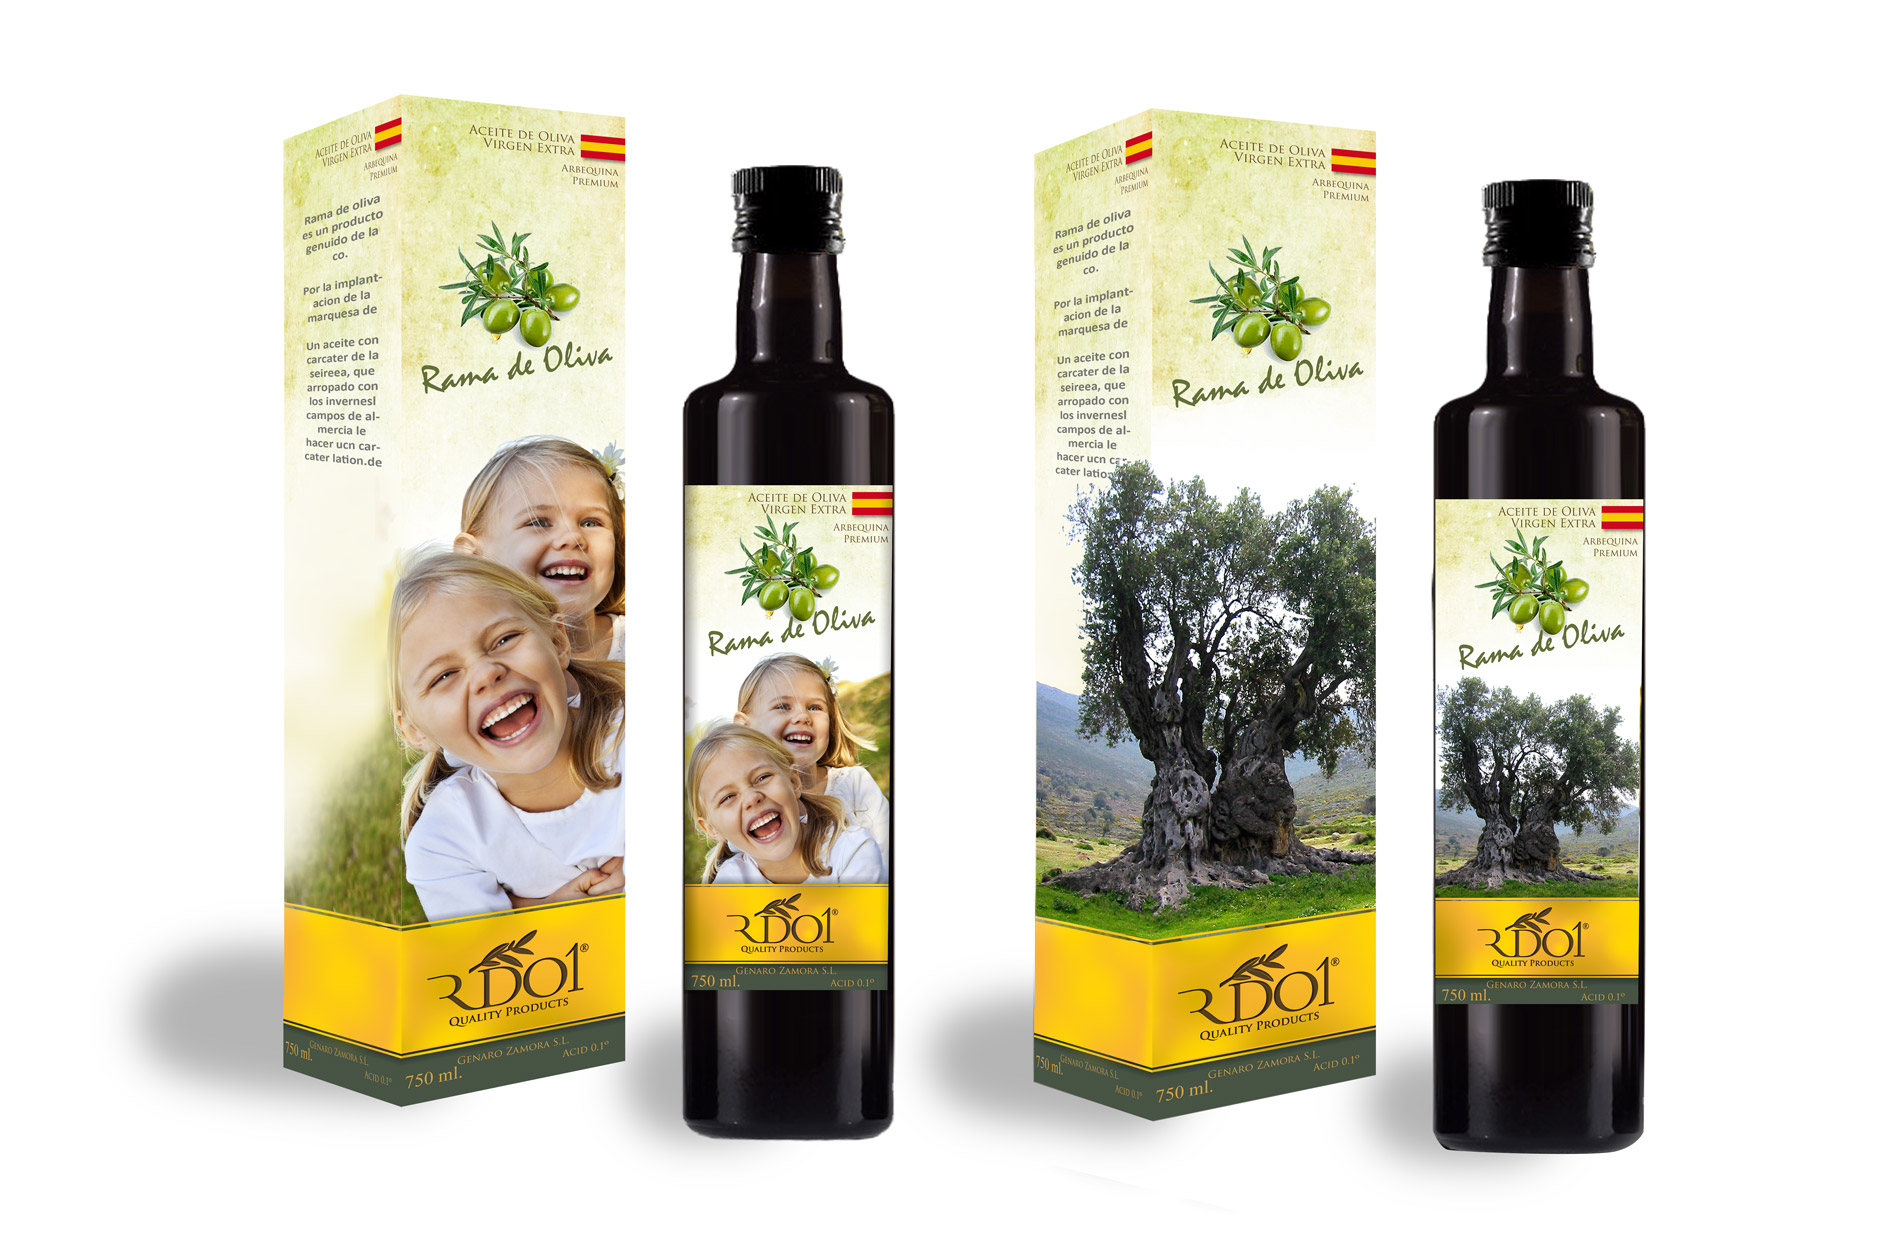 Portfolio of logo and brand design design works for extra virgin olive oil manufacturer and marketer